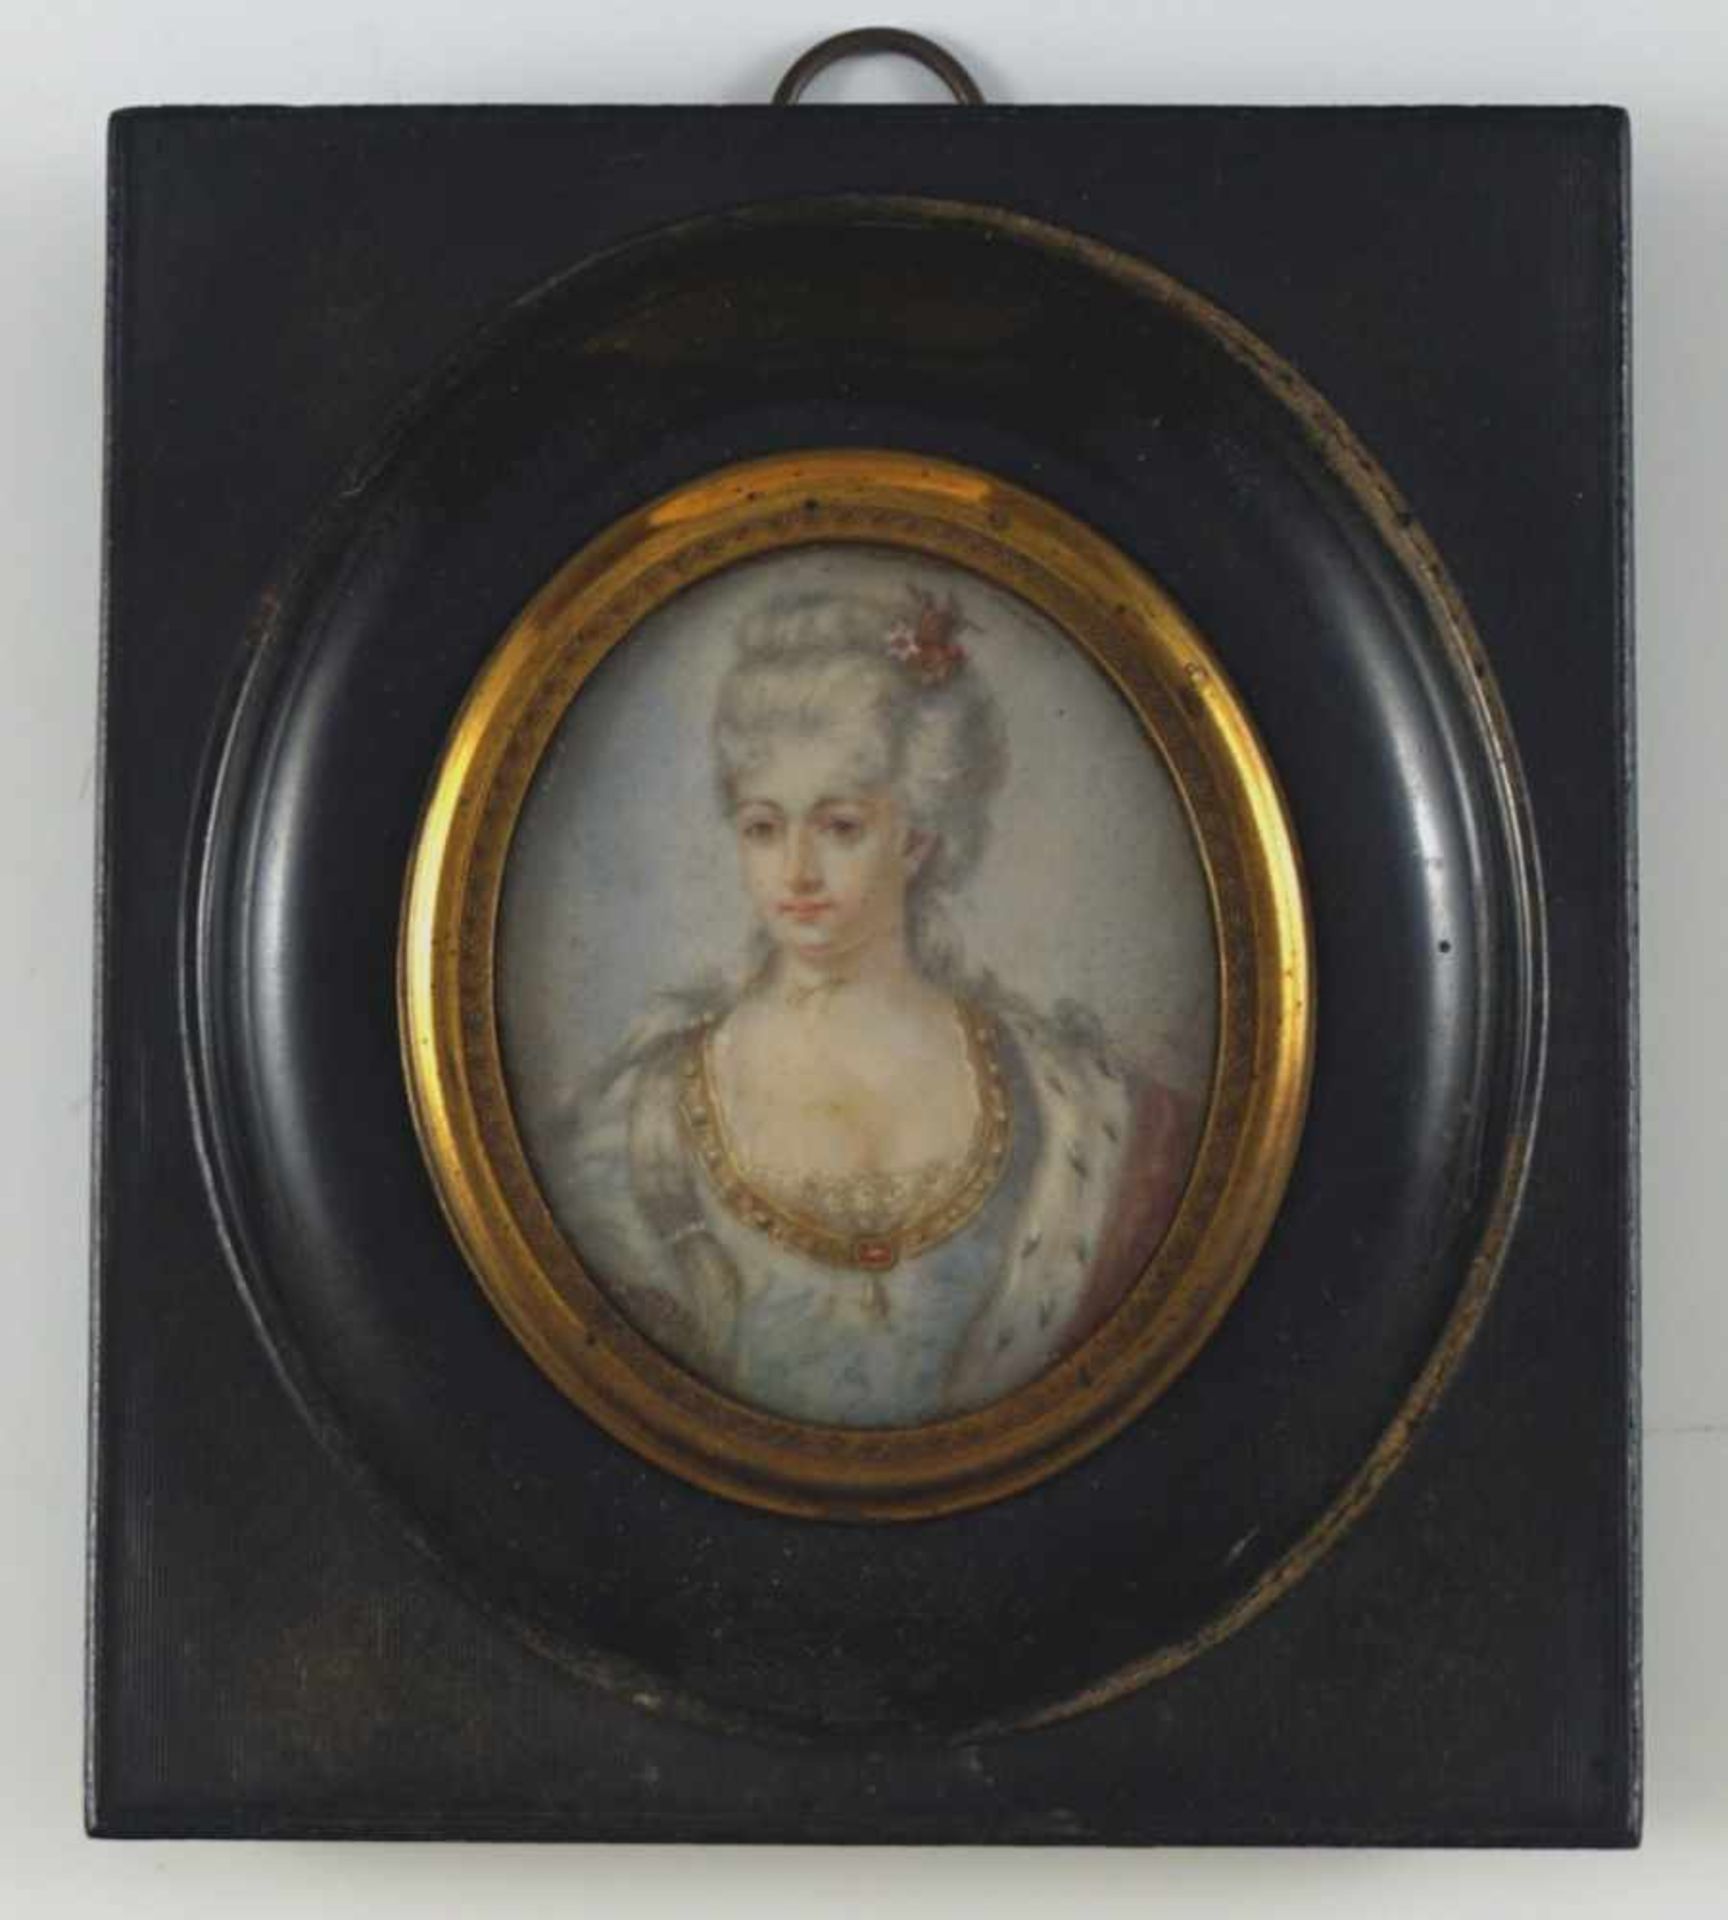 Portrait einer adeligen Dame des 18. Jh. Bez. Dubois. Auf Elfenbein. 19. Jh. Oval, 6,2 x 5,3 cm. R